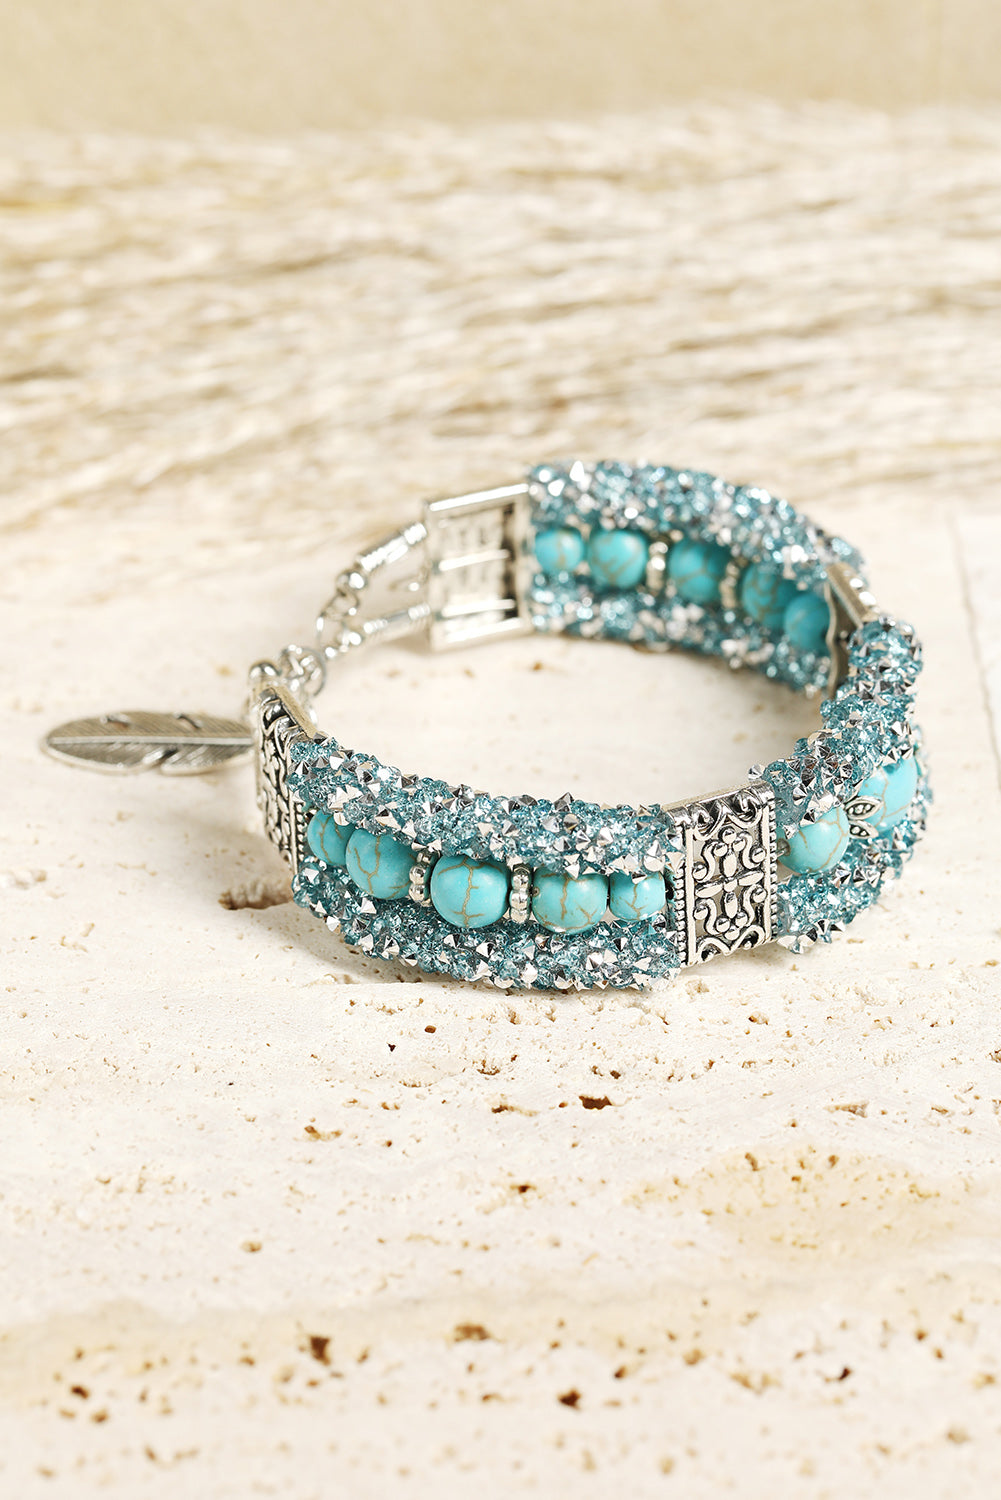 Western Turquoise Beads Rhinestone Carved Bracelet